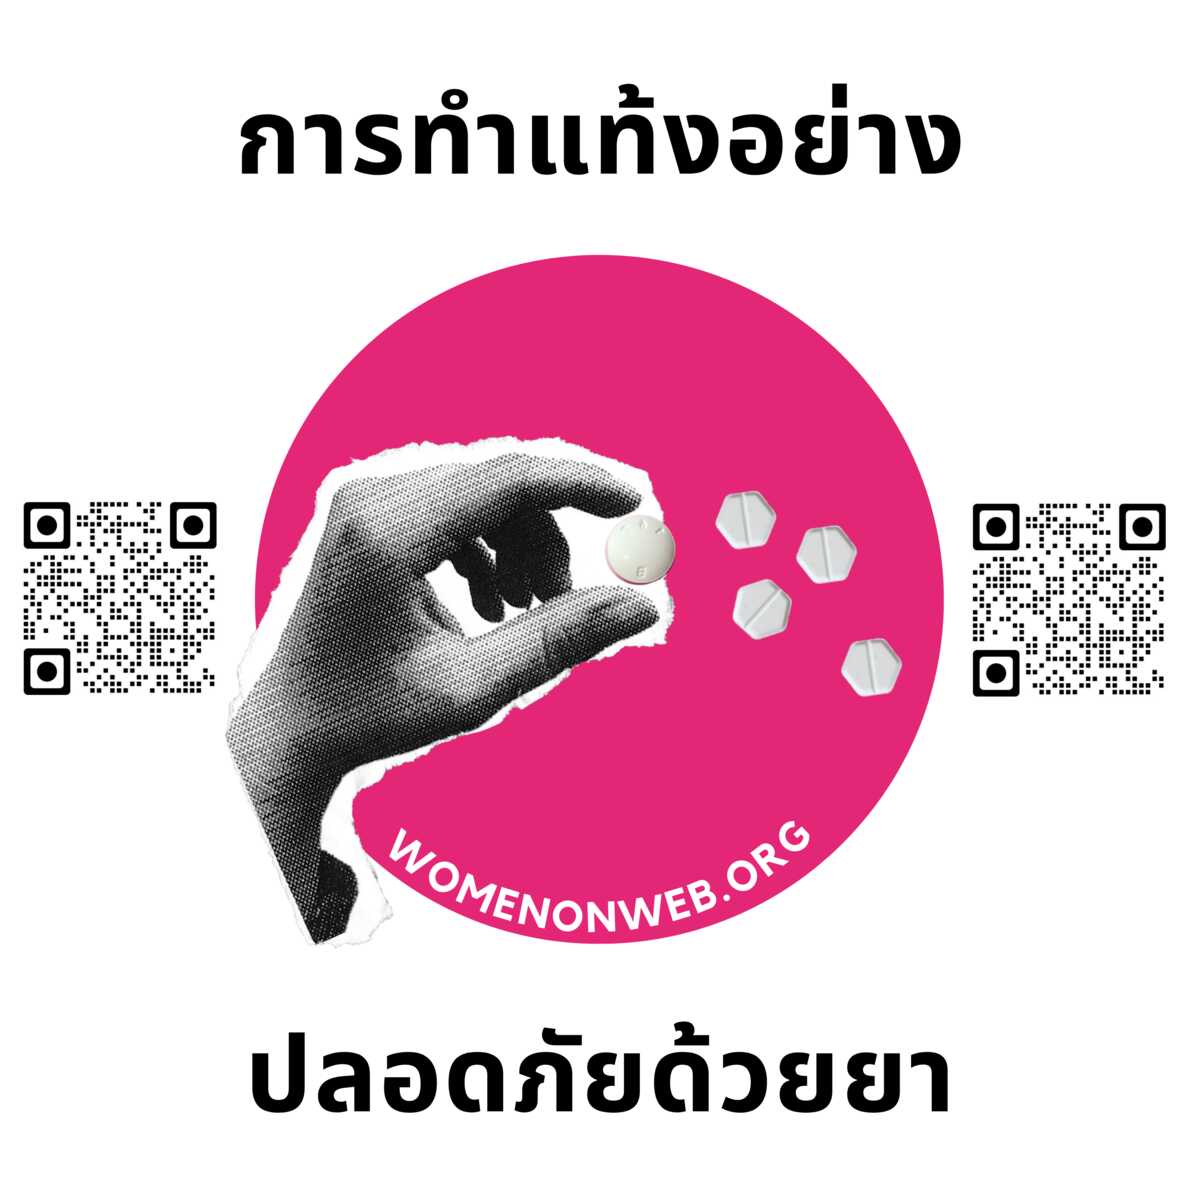 Women on Web sticker Thai